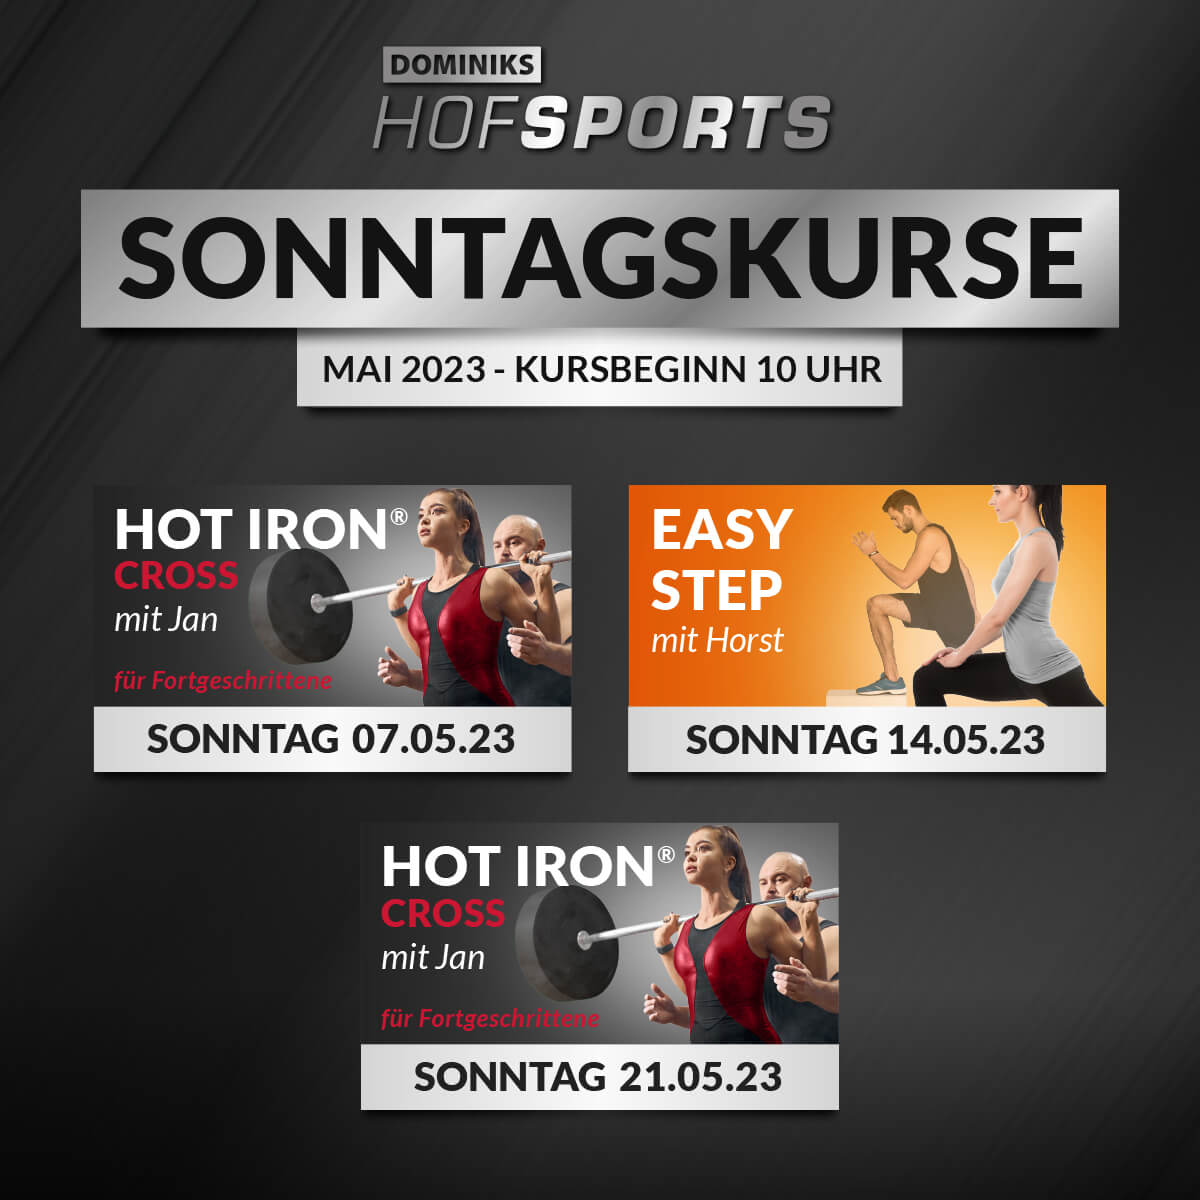 DOMINIKS HofSports Sonntagskurse Mai 2023